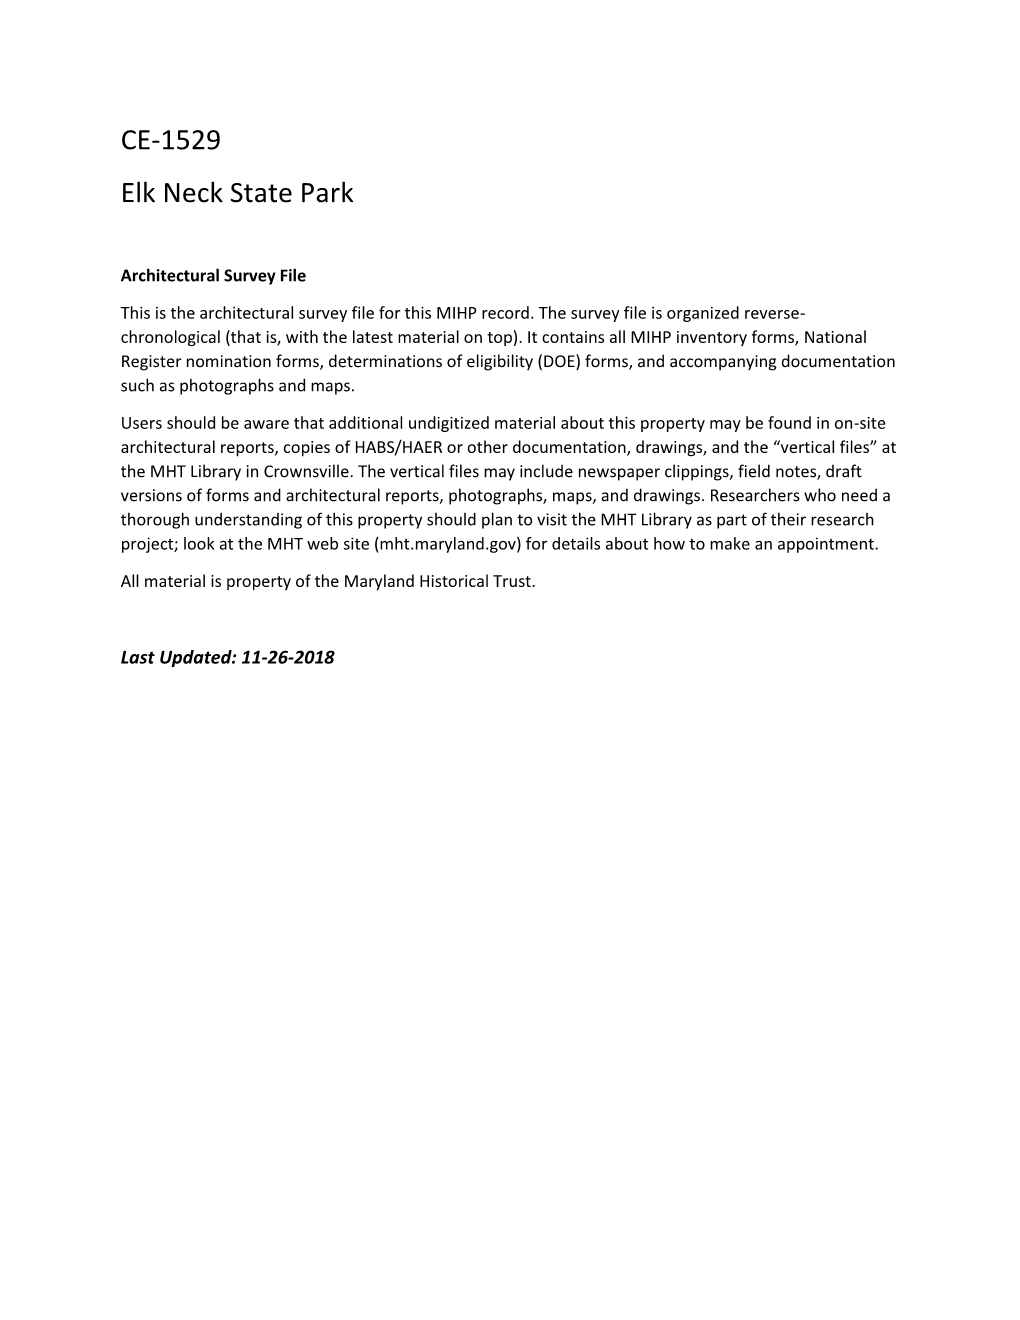 CE-1529 Elk Neck State Park